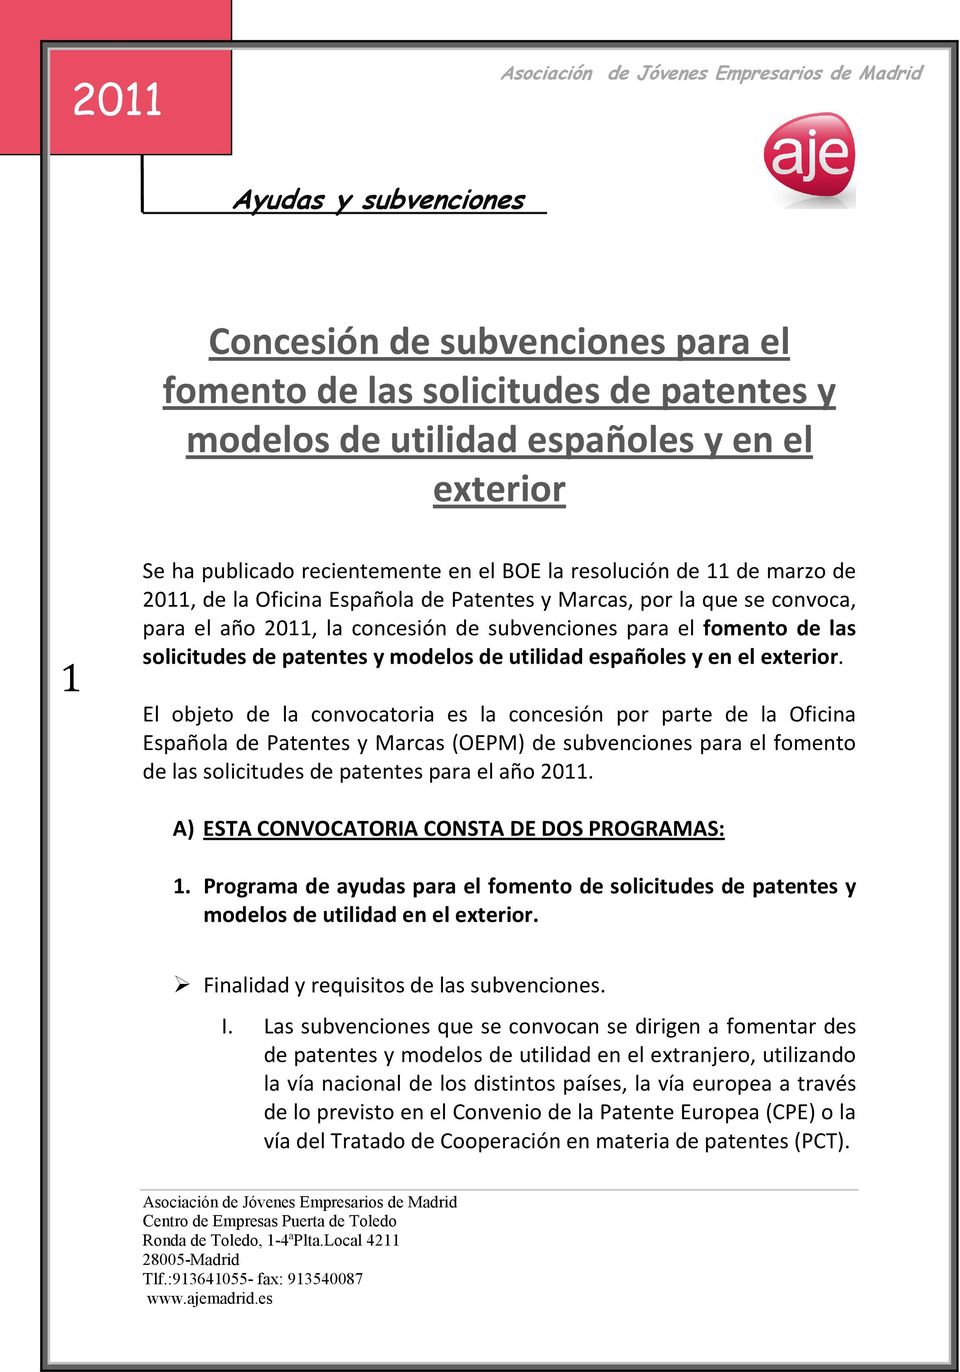 exterior. El objeto de la convocatoria es la concesión por parte de la Oficina Española de Patentes y Marcas (OEPM) de subvenciones para el fomento de las solicitudes de patentes para el año.